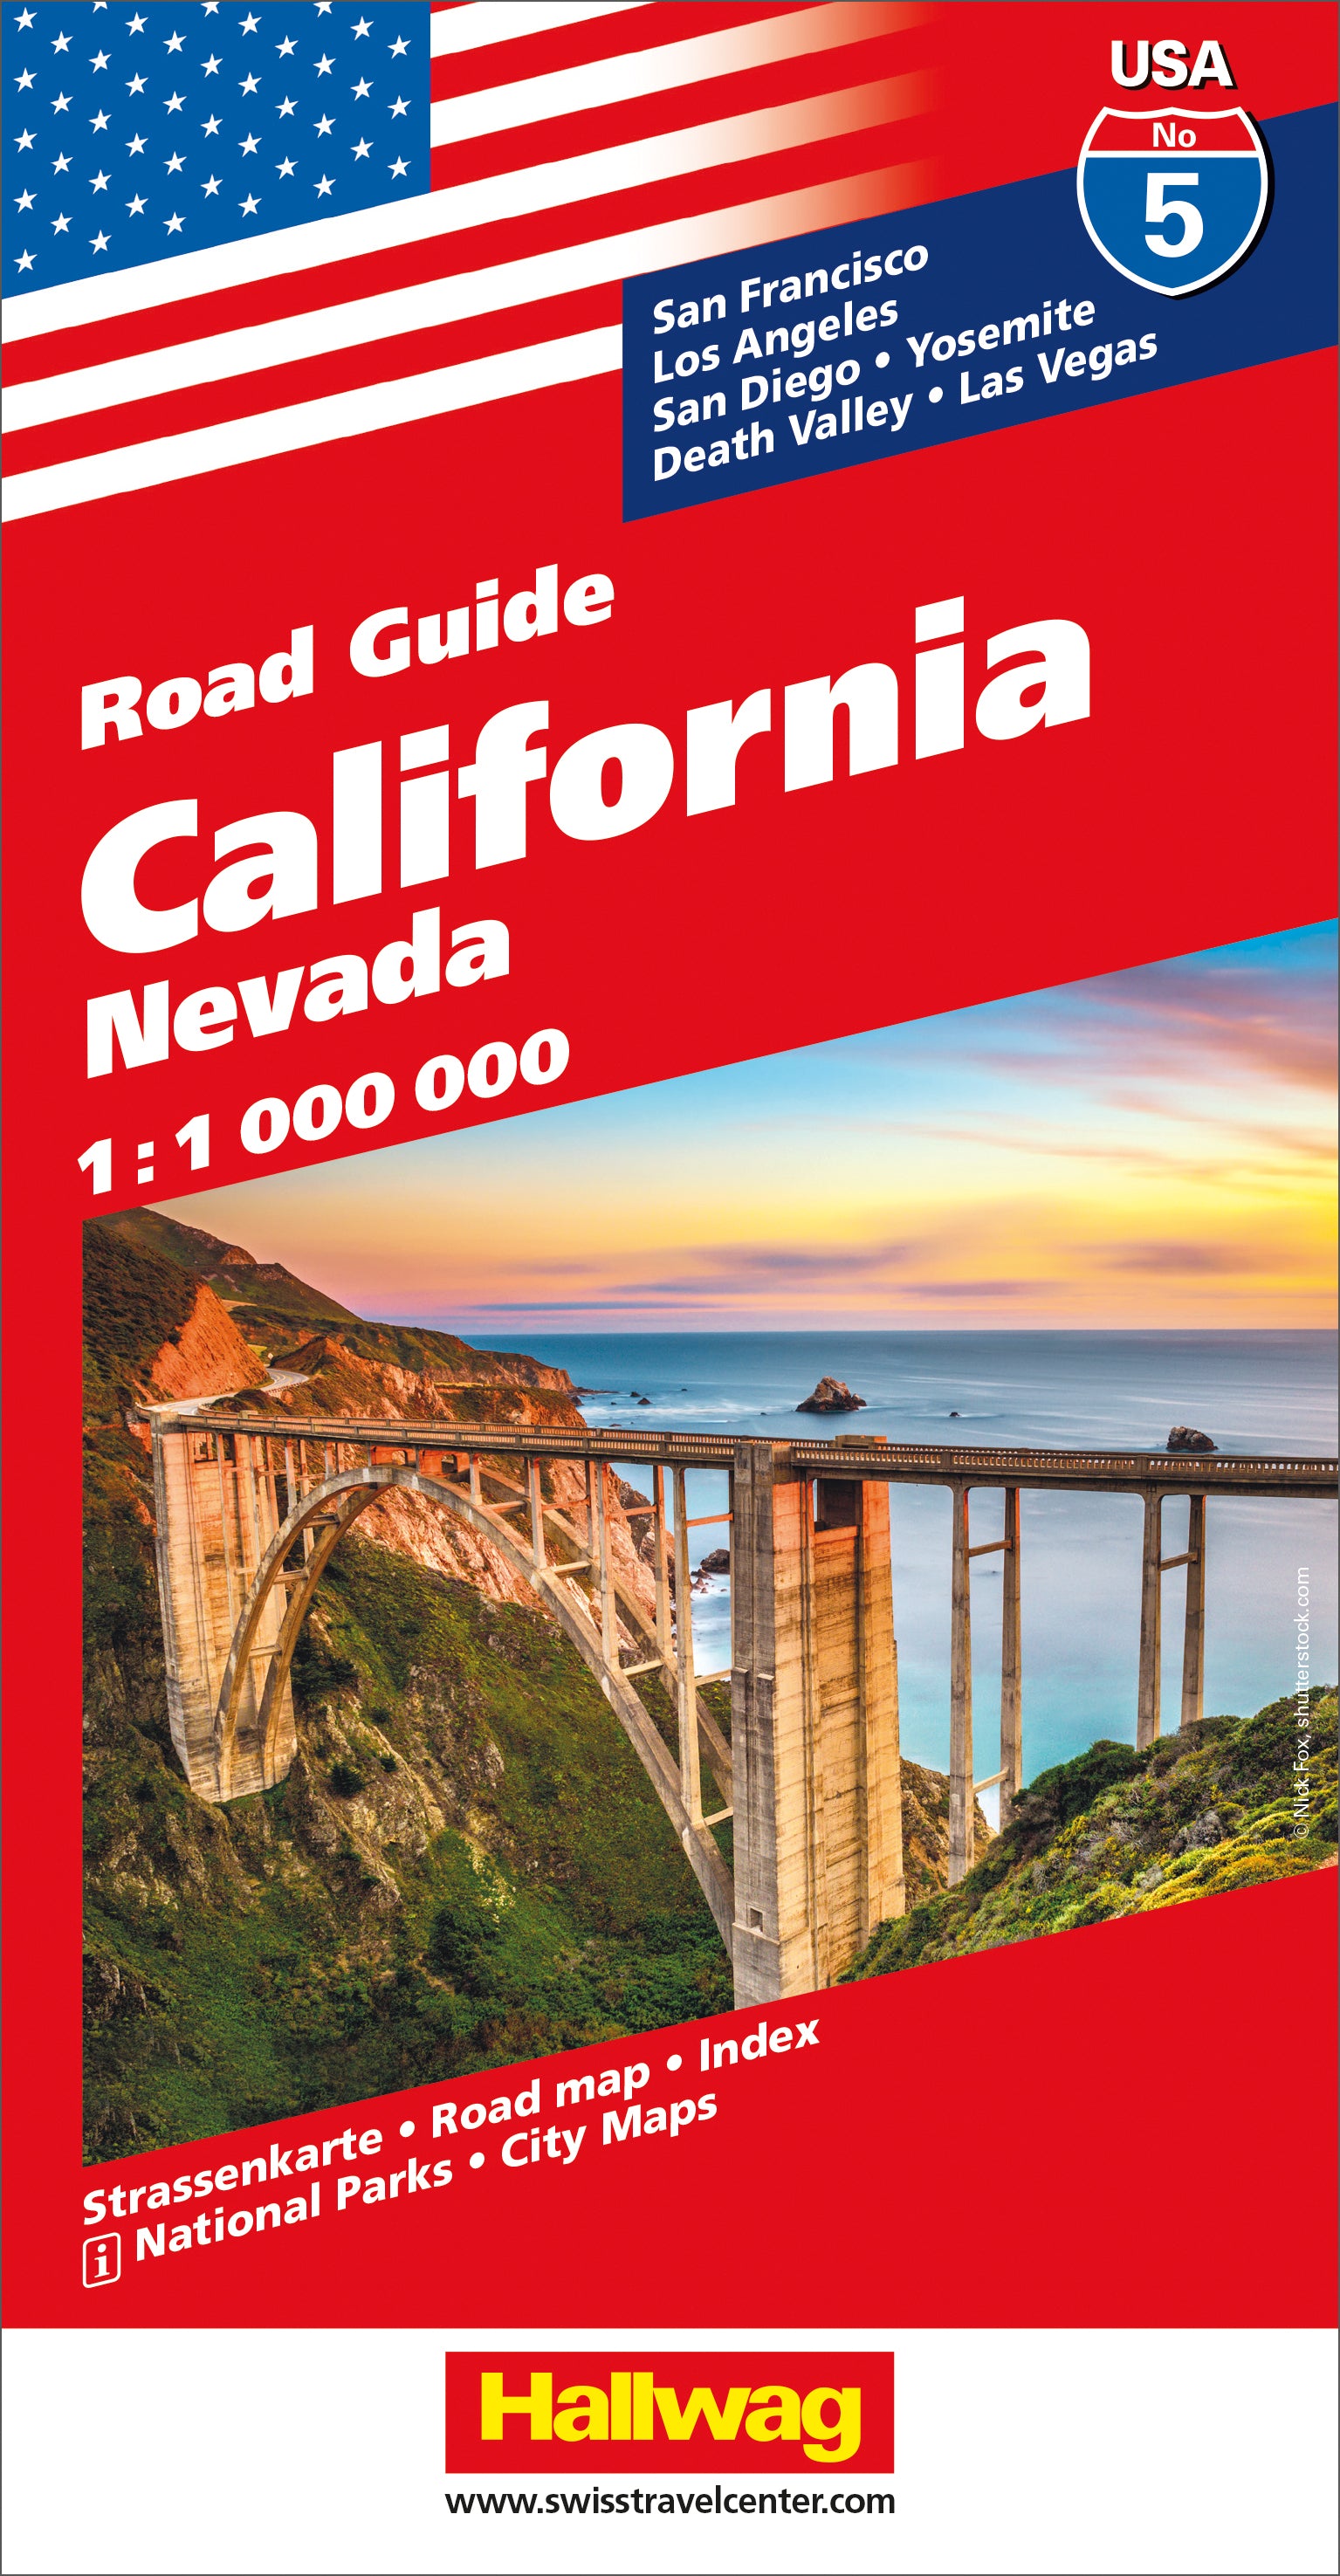 California Nevada-05 USA Road Guide 1.000.000 - Hallwag